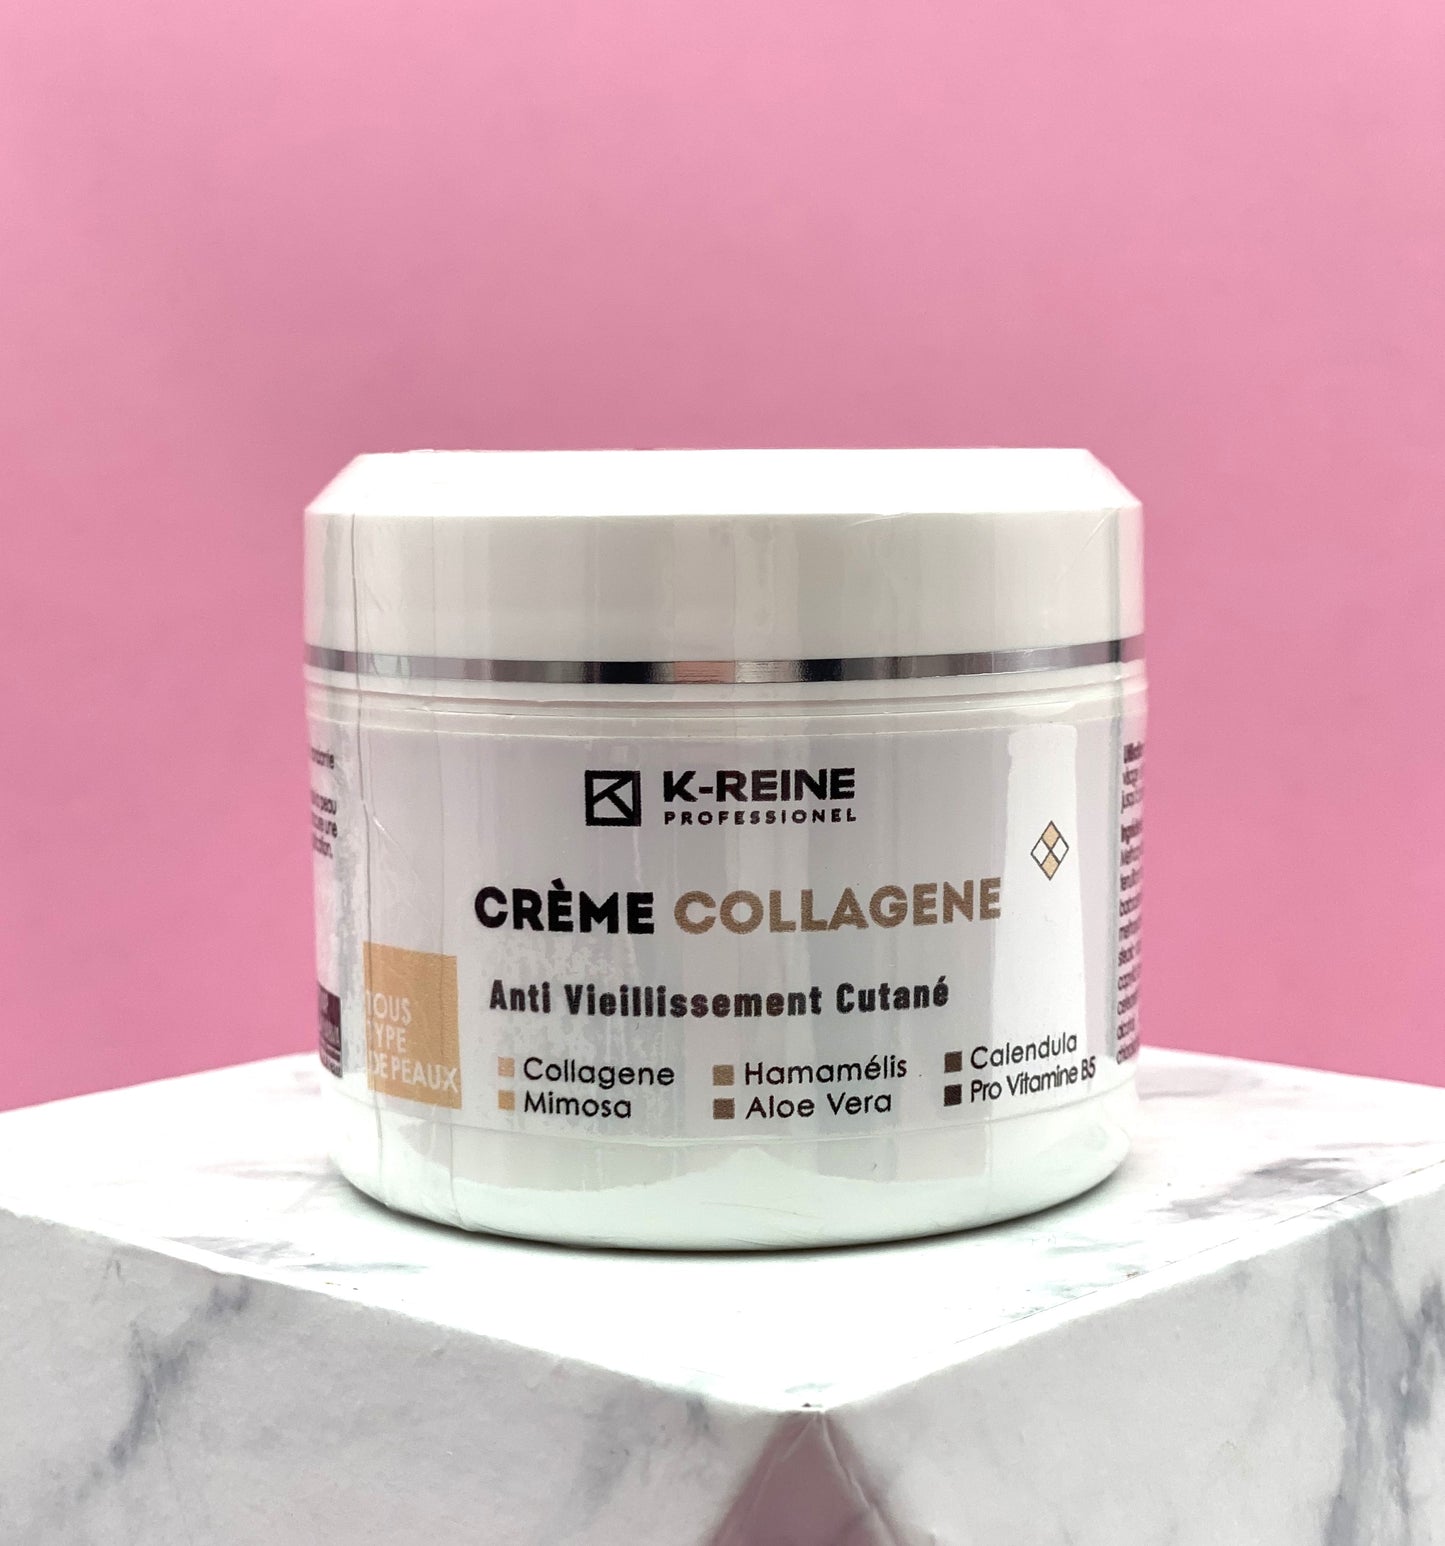 K-REINE Crème collagène , Anti Vieillissement Cutané